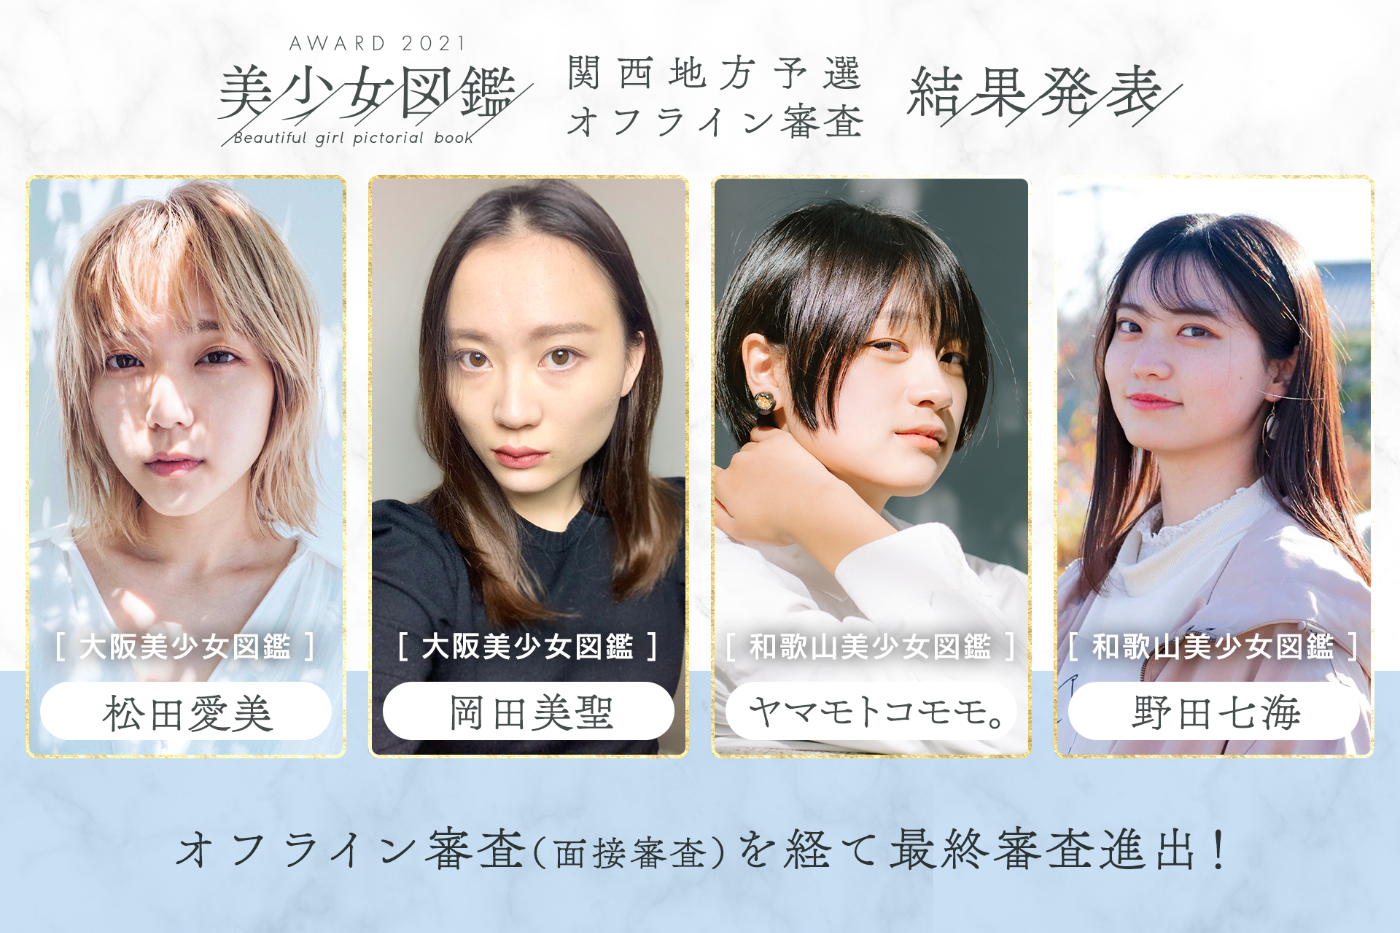 【結果発表】「美少女図鑑AWARD 2021」関西地方予選（オフライン審査）